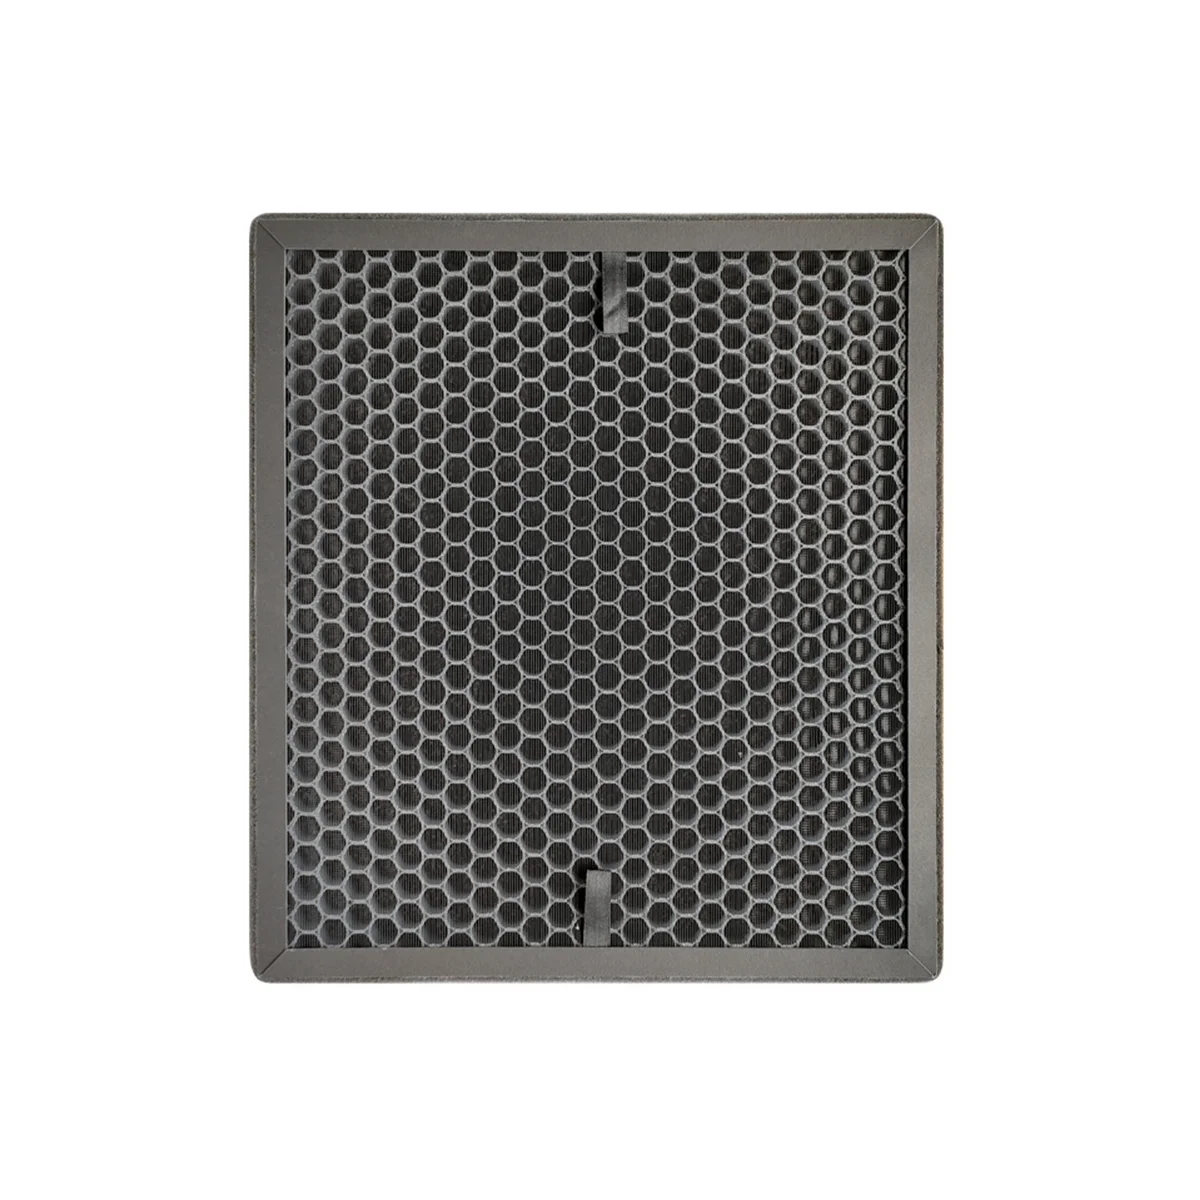 

Сменный фильтр для очистителя воздуха серии Ax40J/Ax40H, ax041fcvow/SC, KJ310F-K3000U HEPA Carbon, комбинированный фильтр